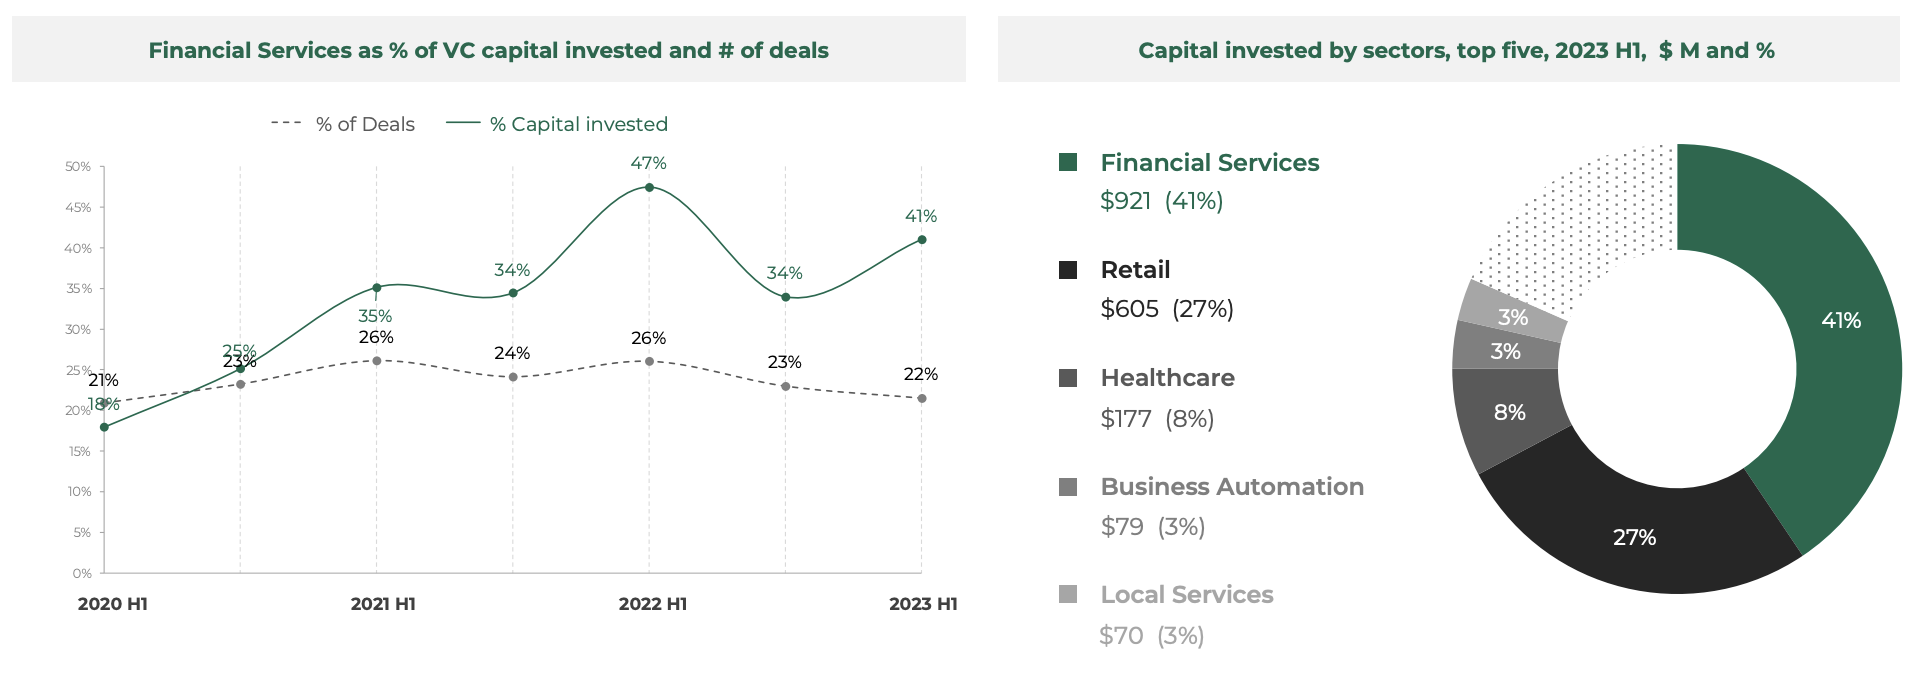 Proporción de servicios financieros como porcentaje del capital de riesgo invertido y número de acuerdos, Fuente: Southeast Asia Tech Investment 2023 H1, Cento Ventures, diciembre de 2023